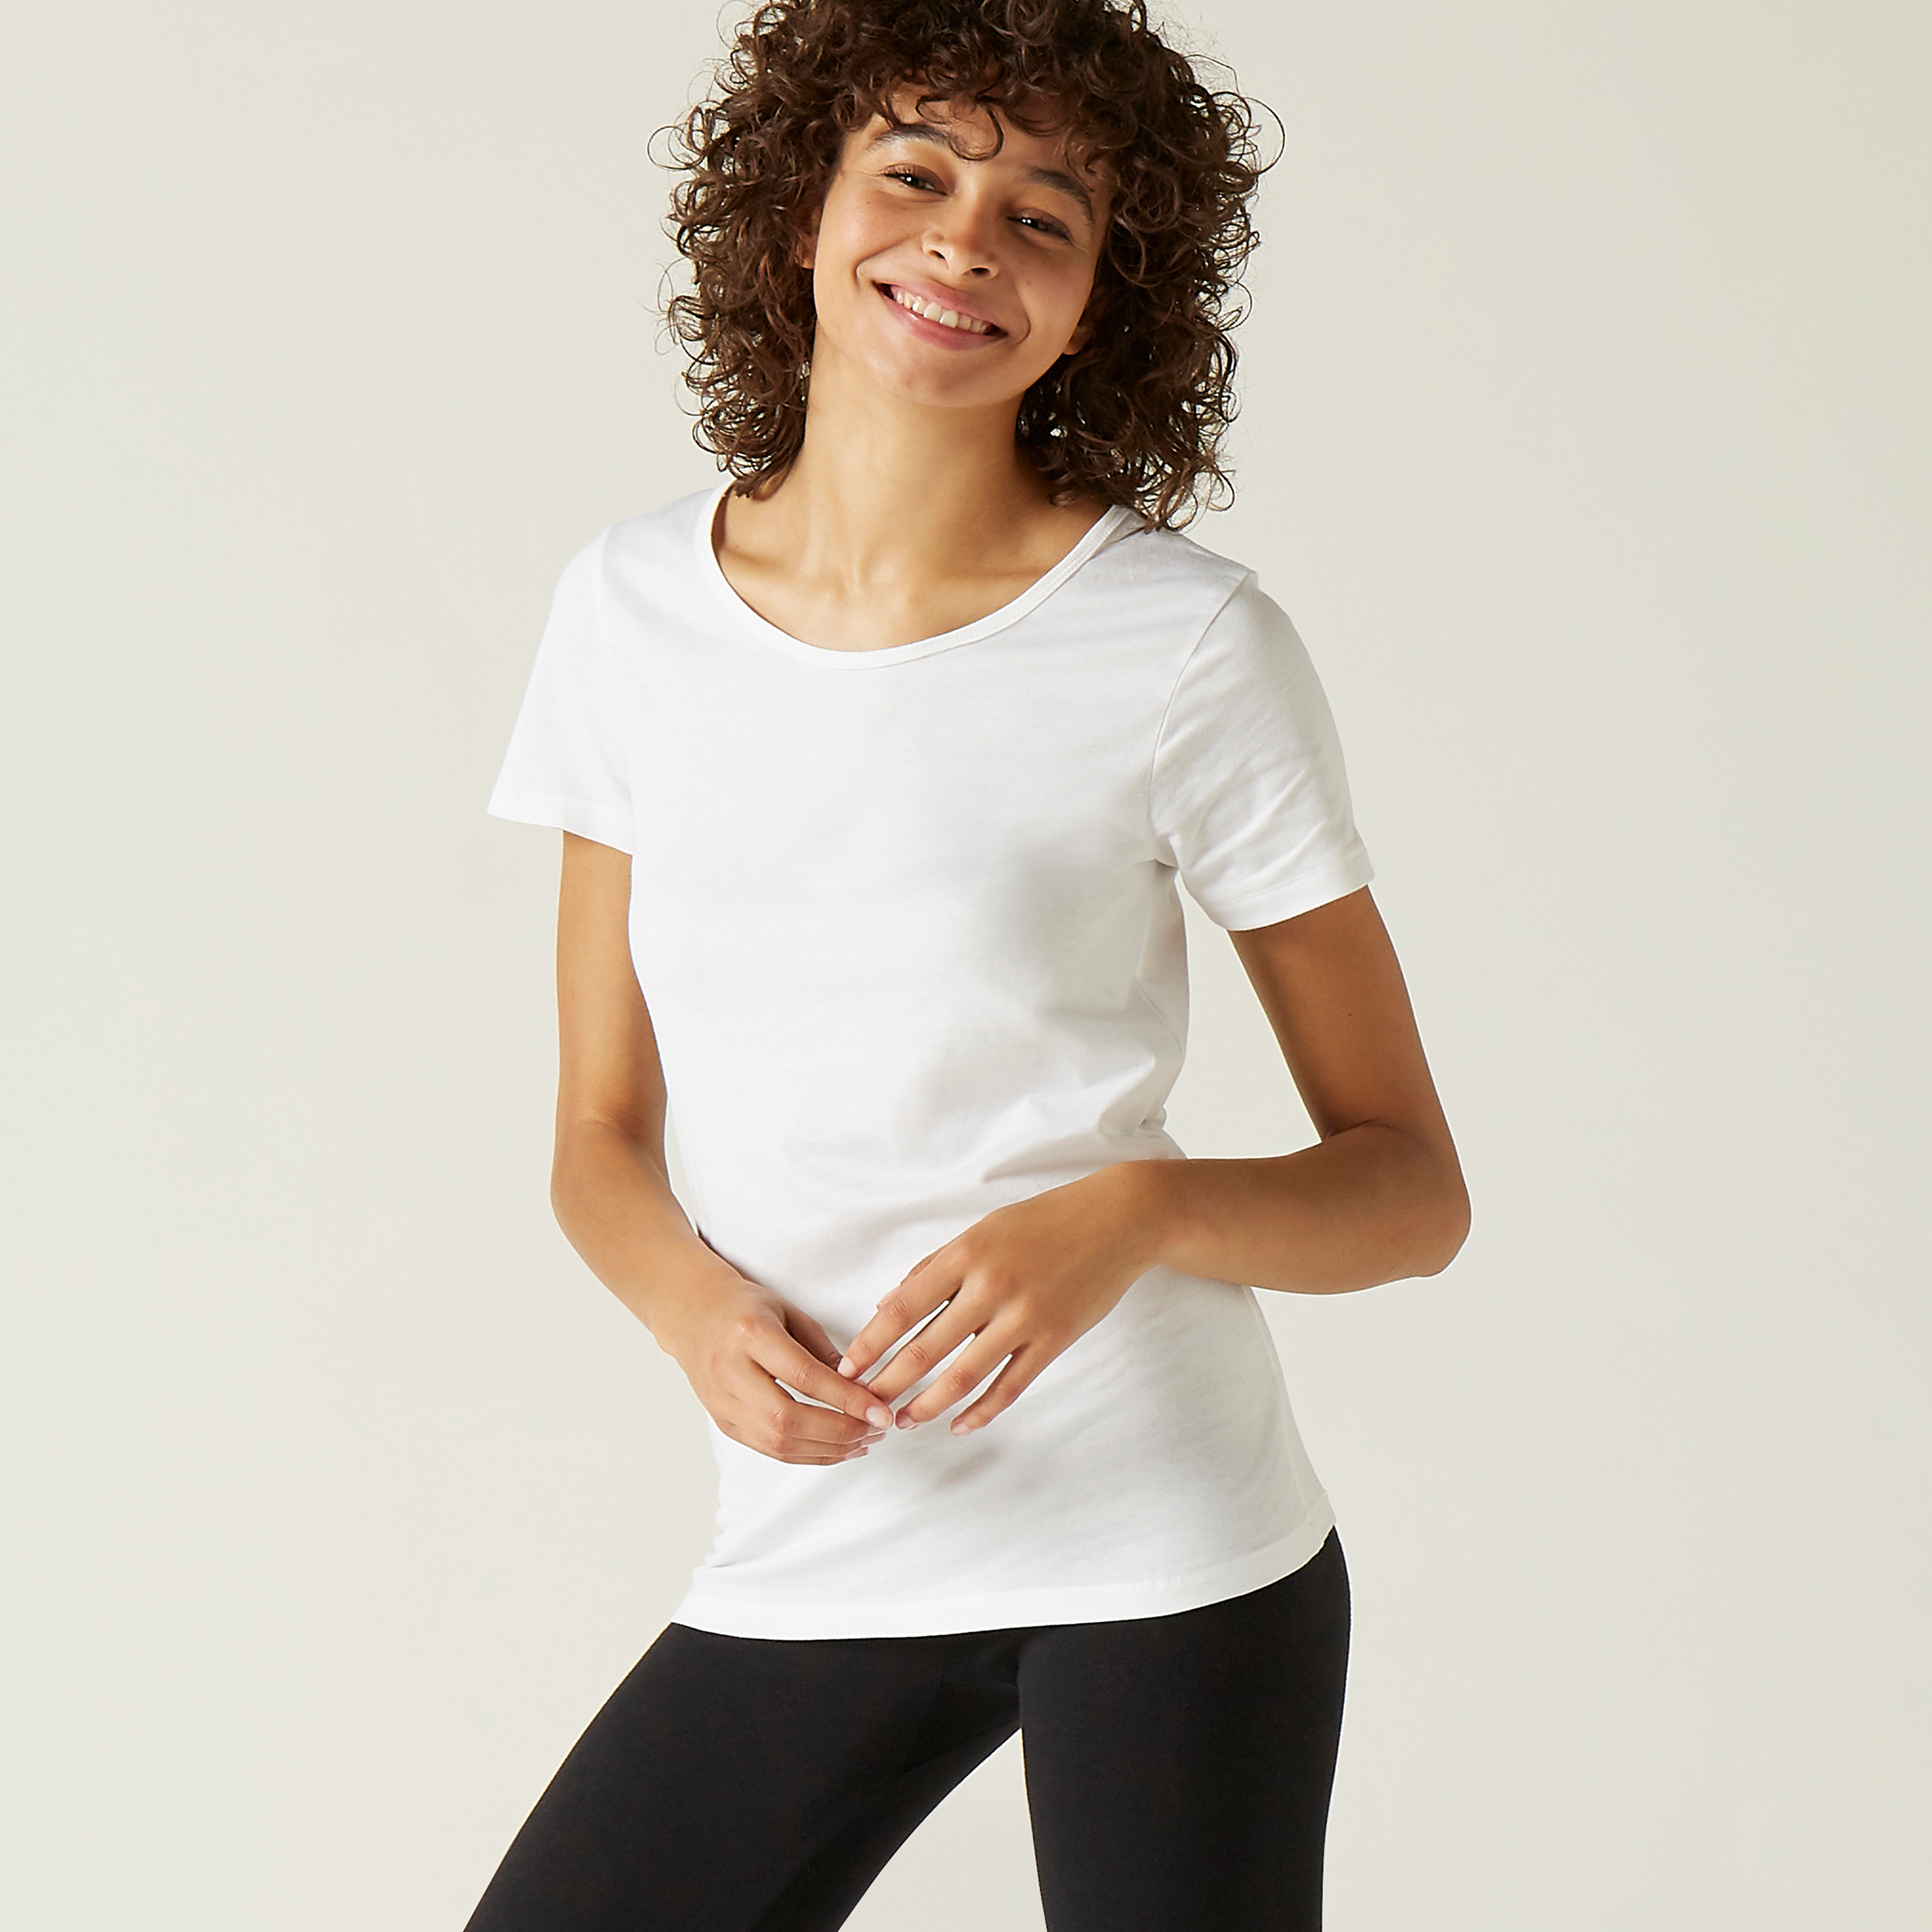 T-shirt fitness manches longues droit col rond coton femme - 500